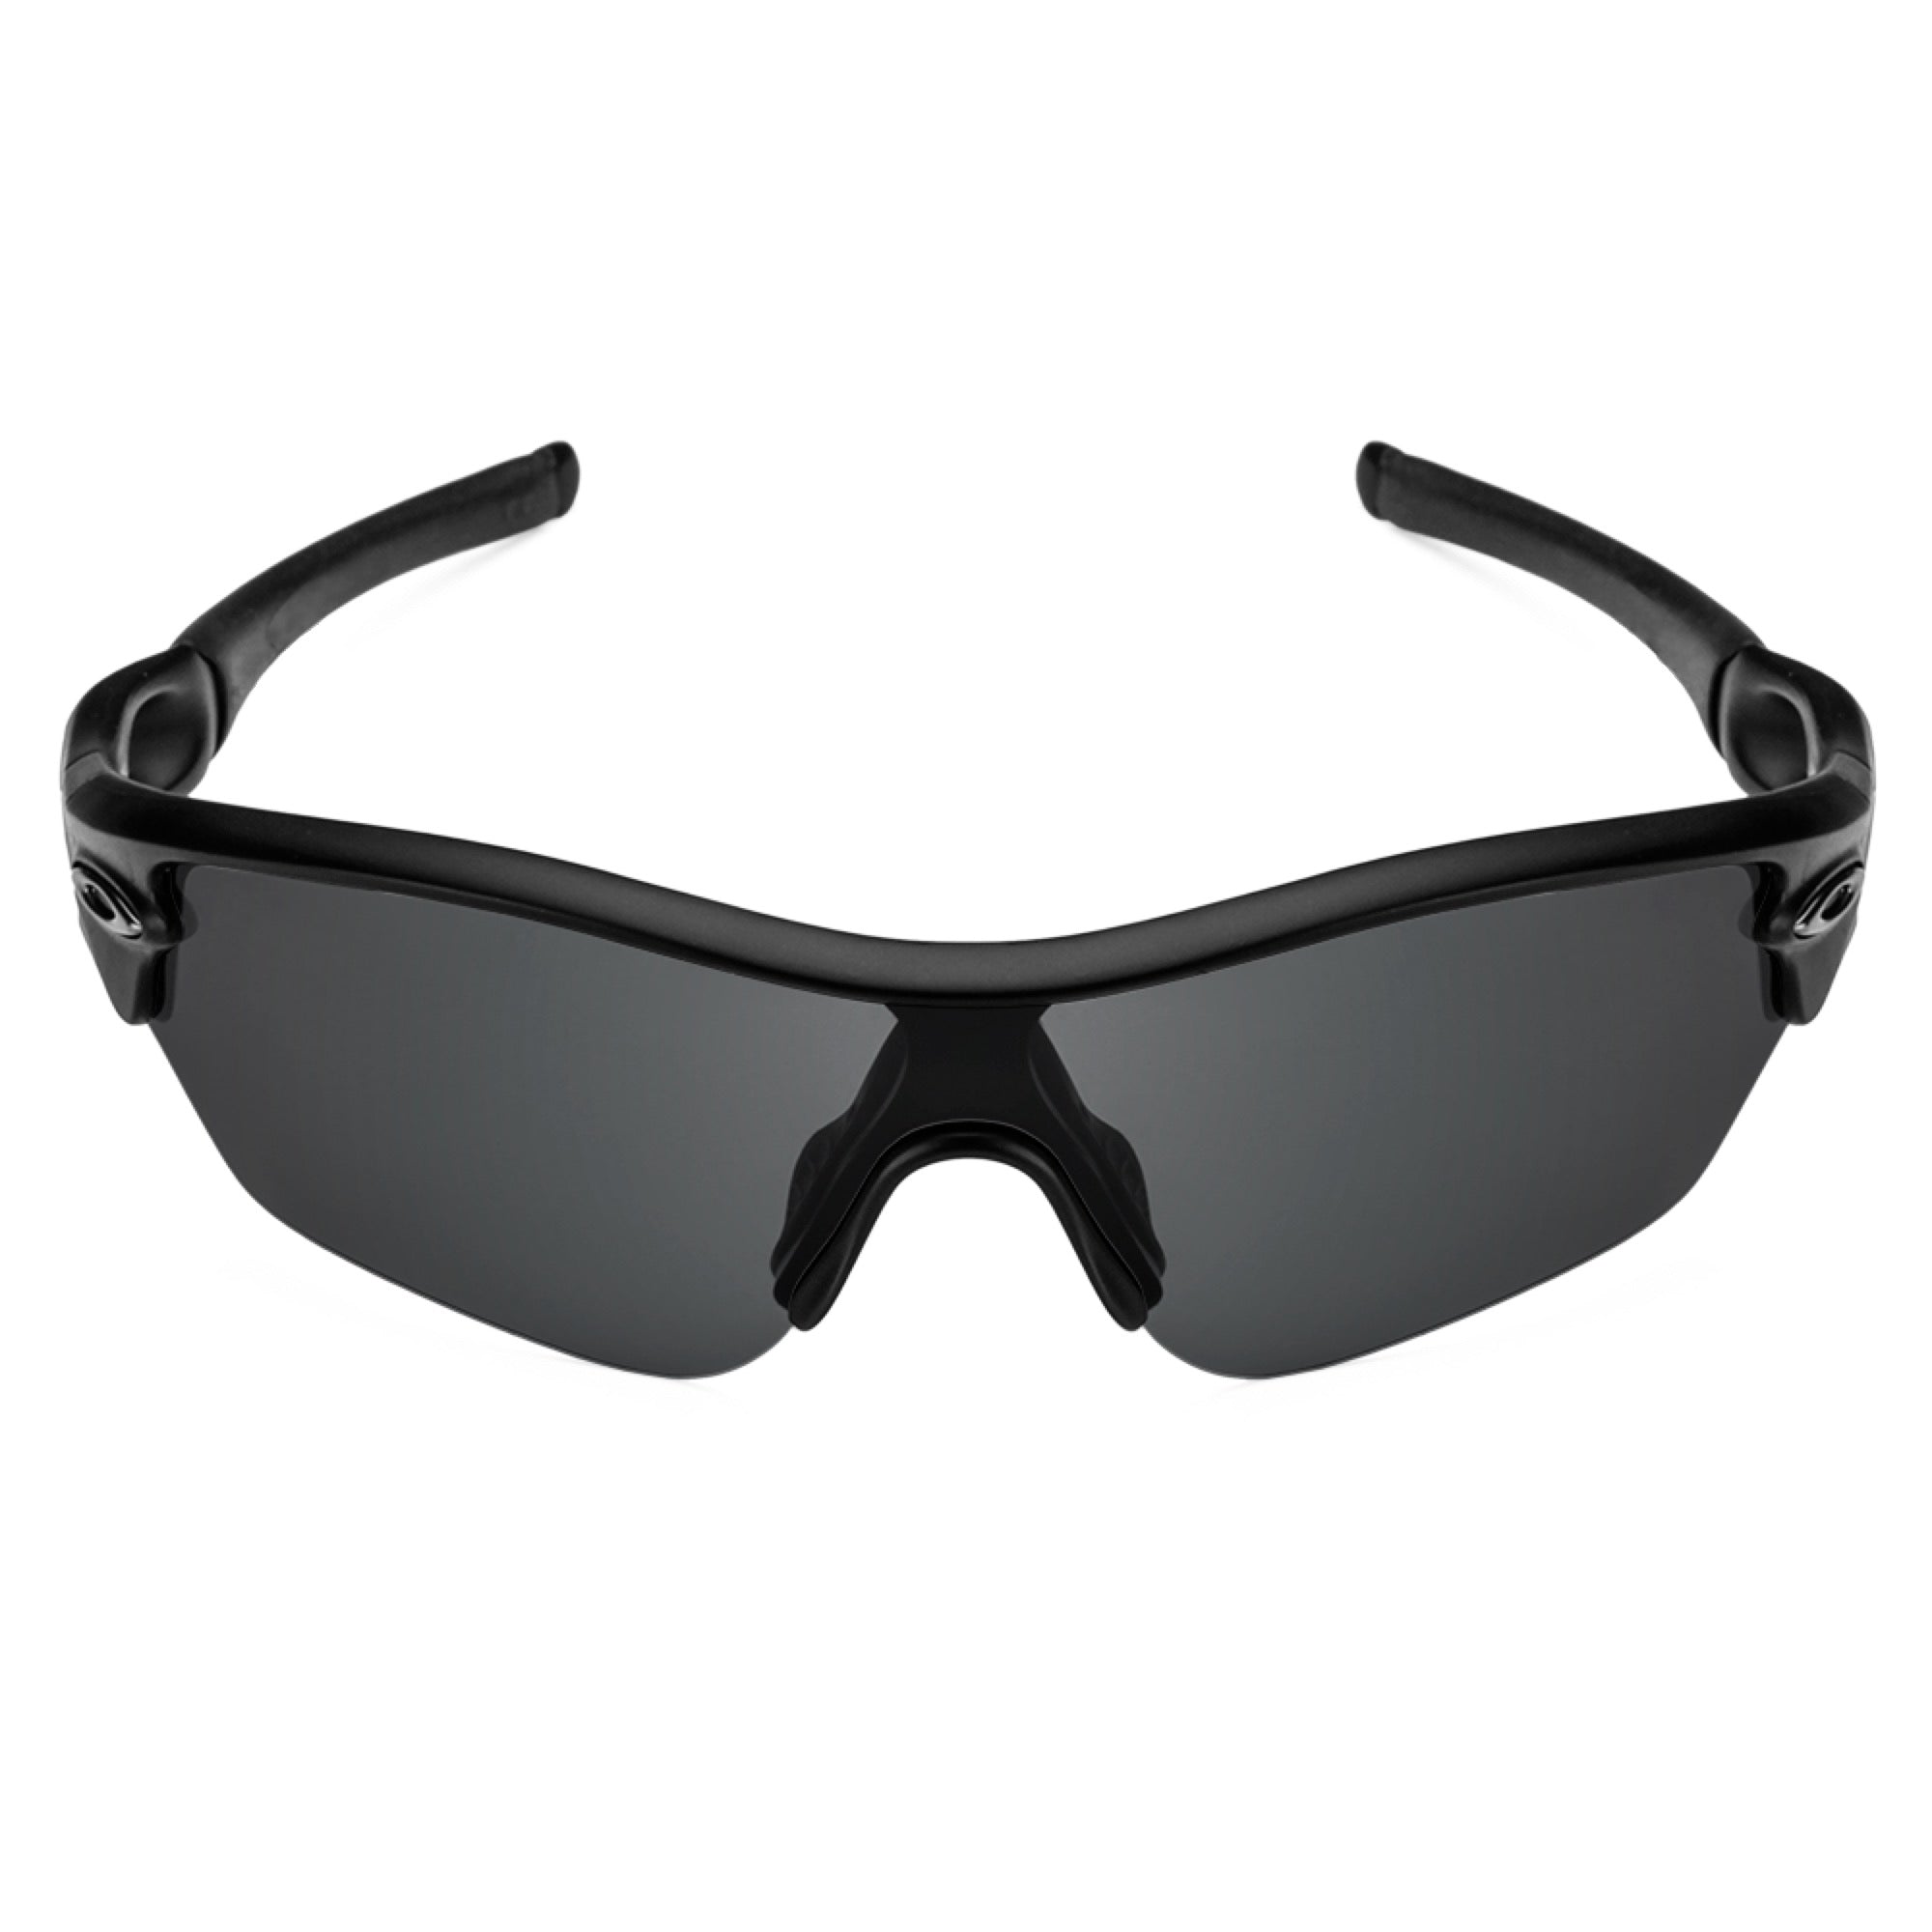 Revant black rubber kit installed on Oakley Radar sunglasses